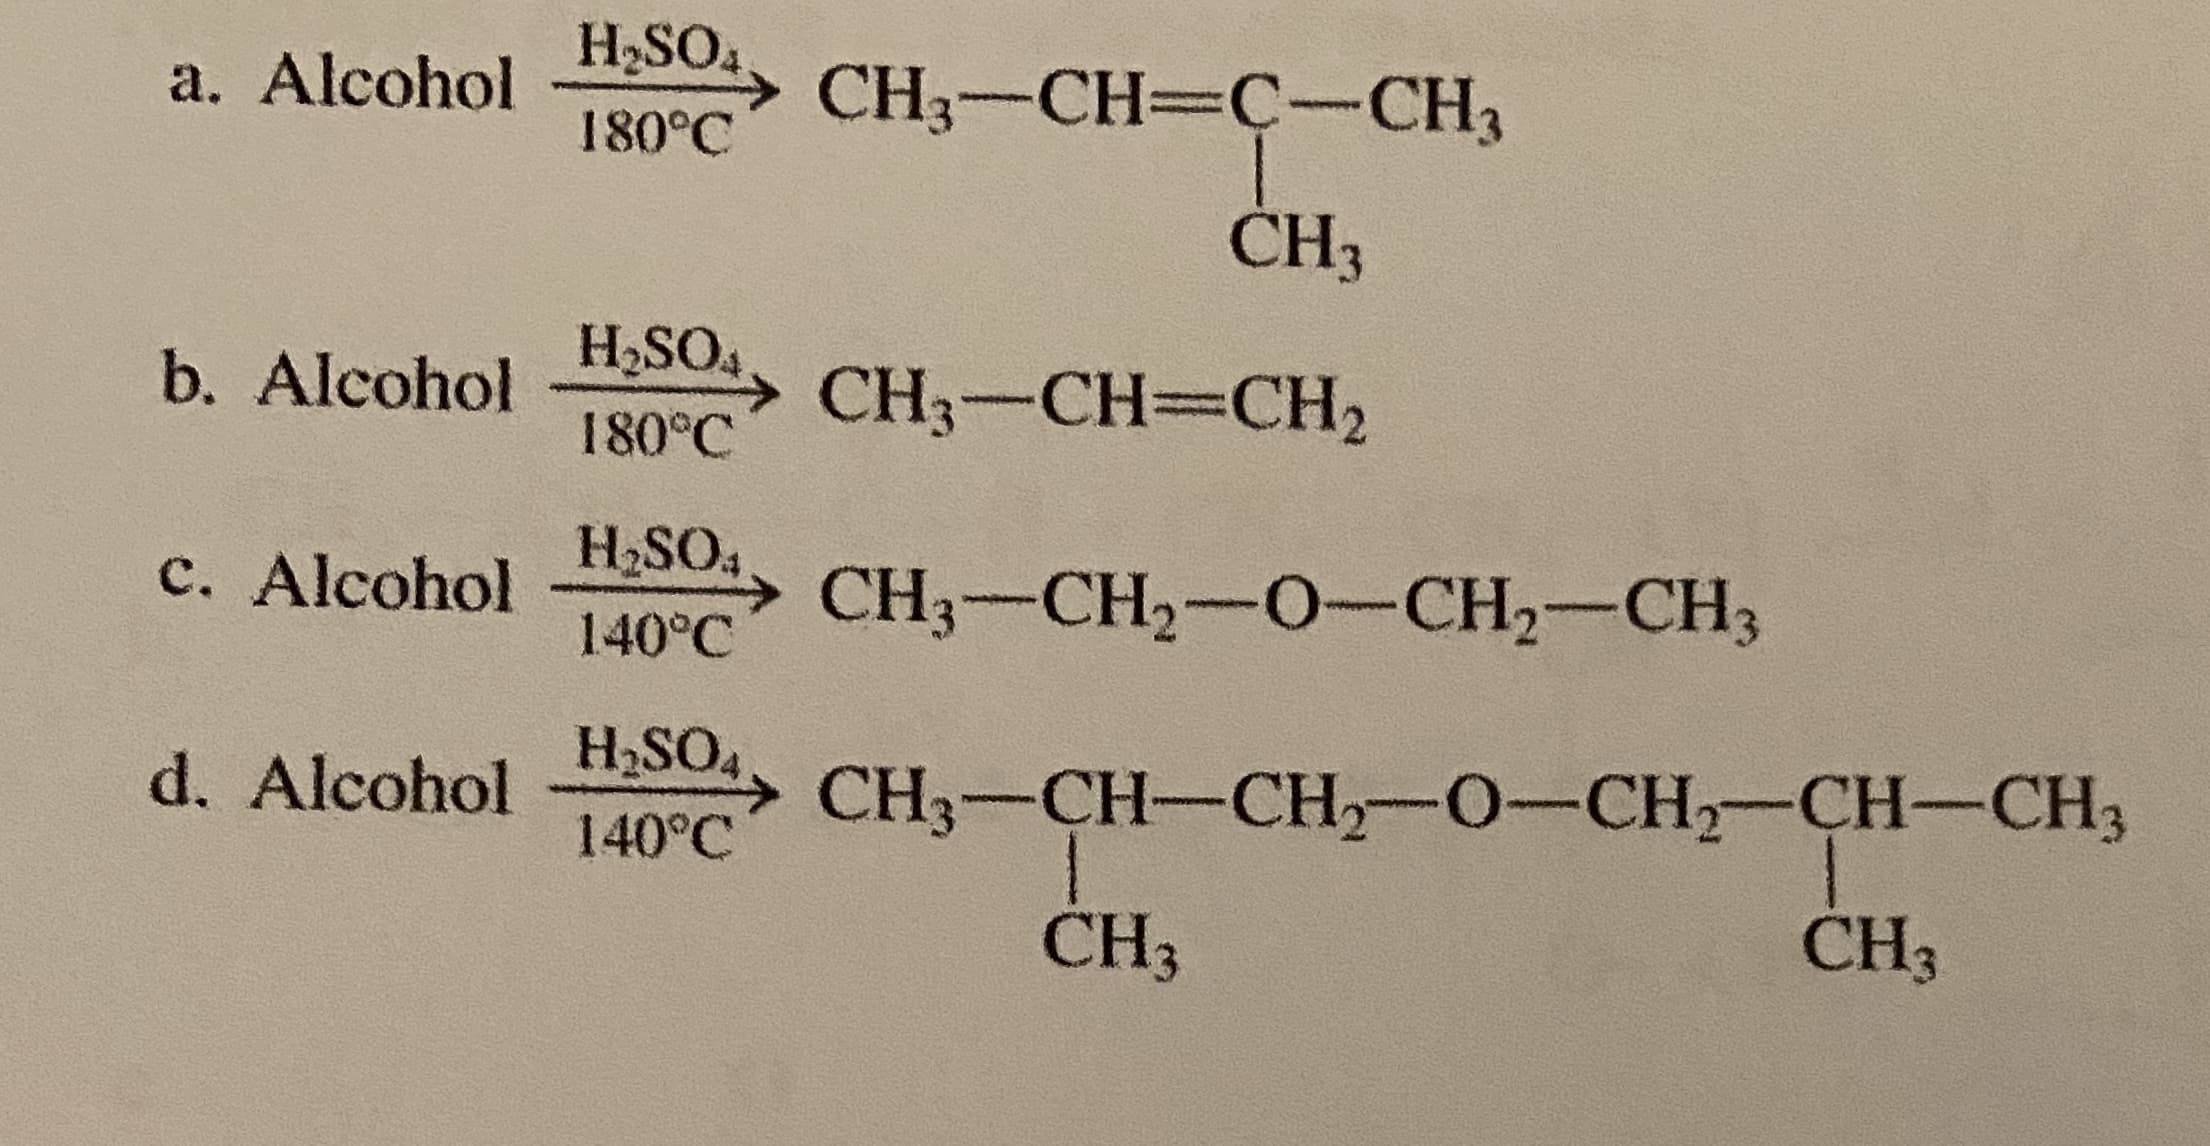 H2SO4
a. Alcohol
CH3-CH=C-CH3
180°C
ČH3
b. Alcohol
H,SO4
→ CH3-CH=CH2
180°C
c. Alcohol
H2SO4
→ CH3-CH2-0-CH2-CH3
140°C
d. Alcohol
H2SO4
CH3-CH-CH-O-CH-CH-CH3
140°C
CH3
CH3
